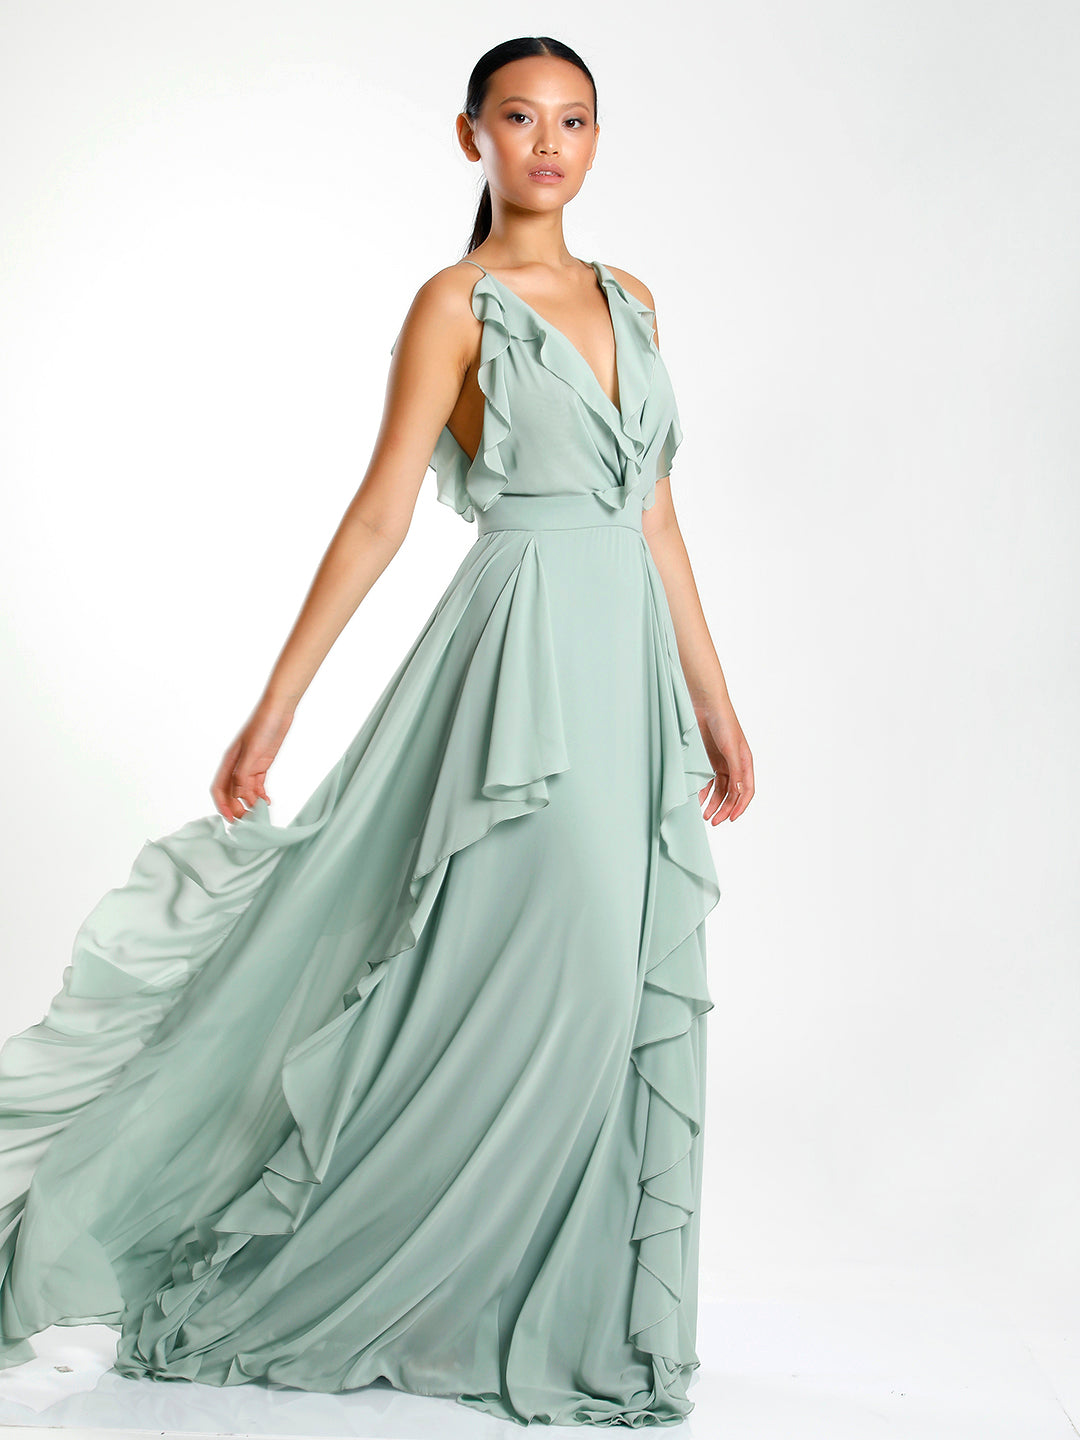 Ciara Ruffled Dress Green